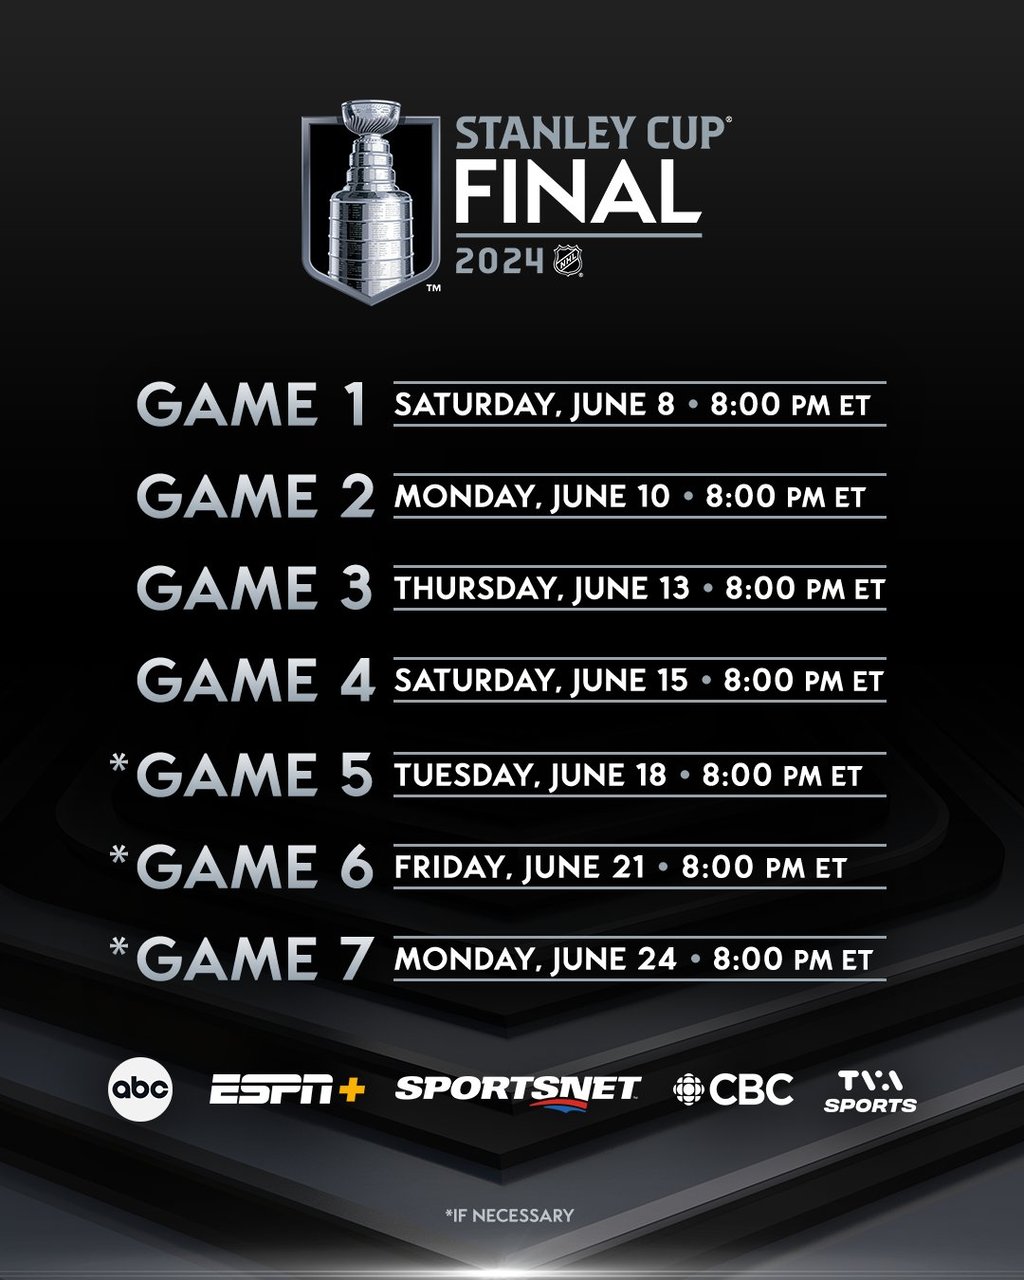 Voici l'horaire complet de la finale de la Coupe Stanley